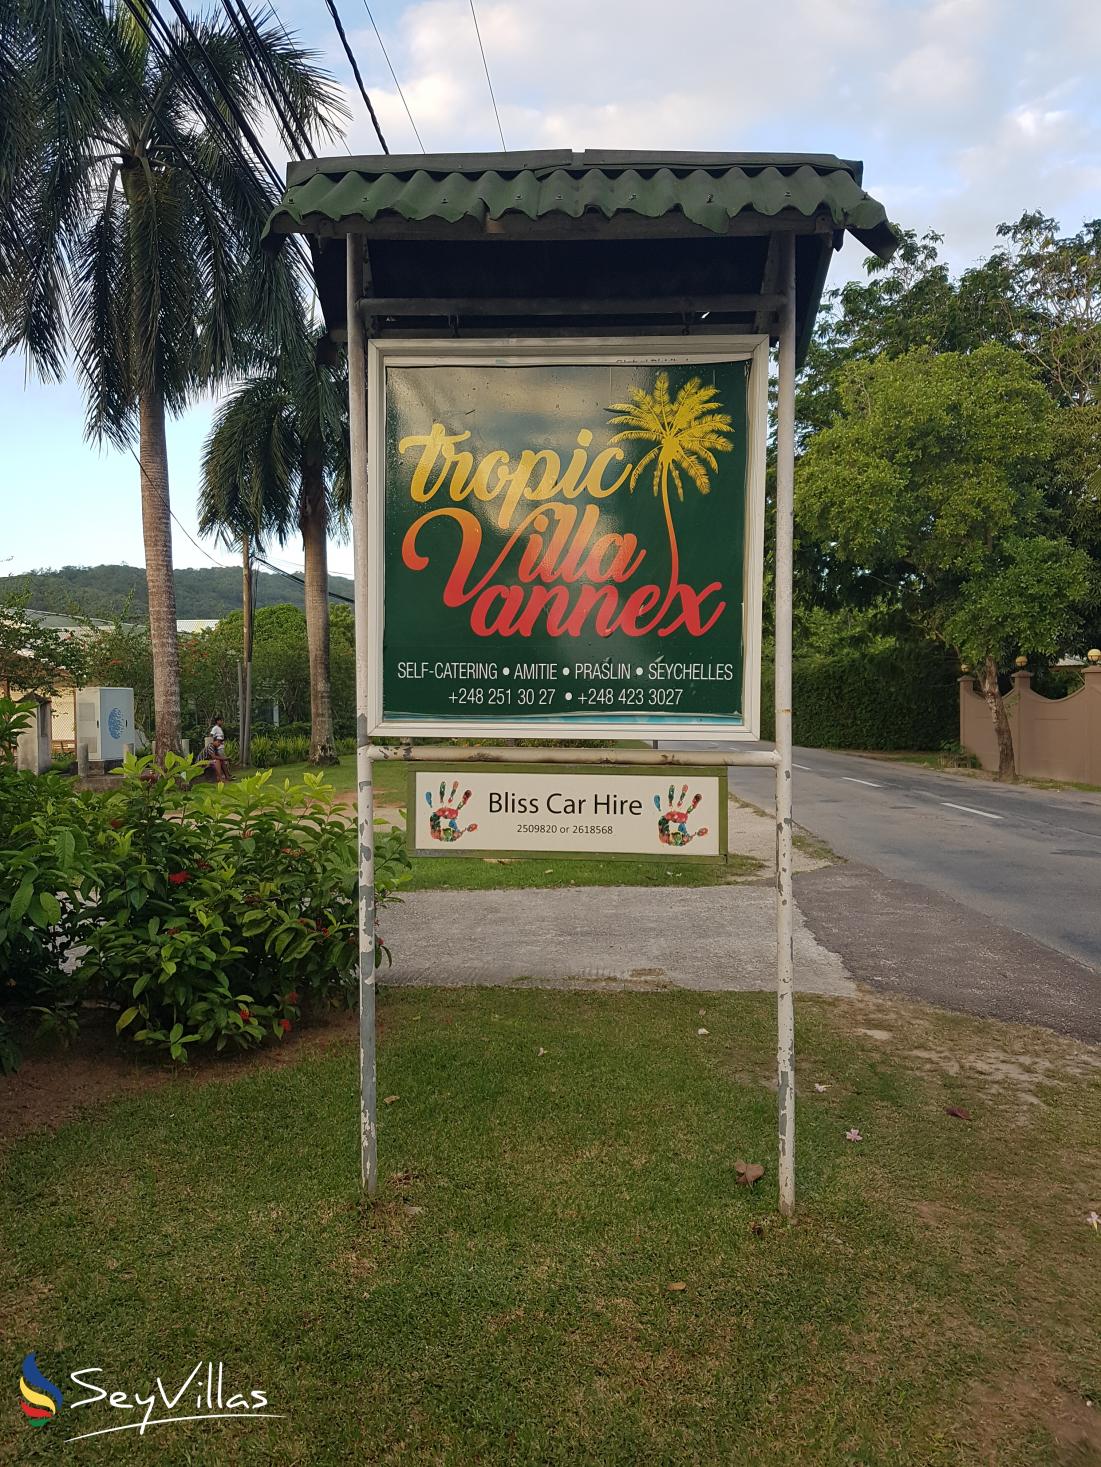 Foto 6: Tropic Villa Annex - Aussenbereich - Praslin (Seychellen)